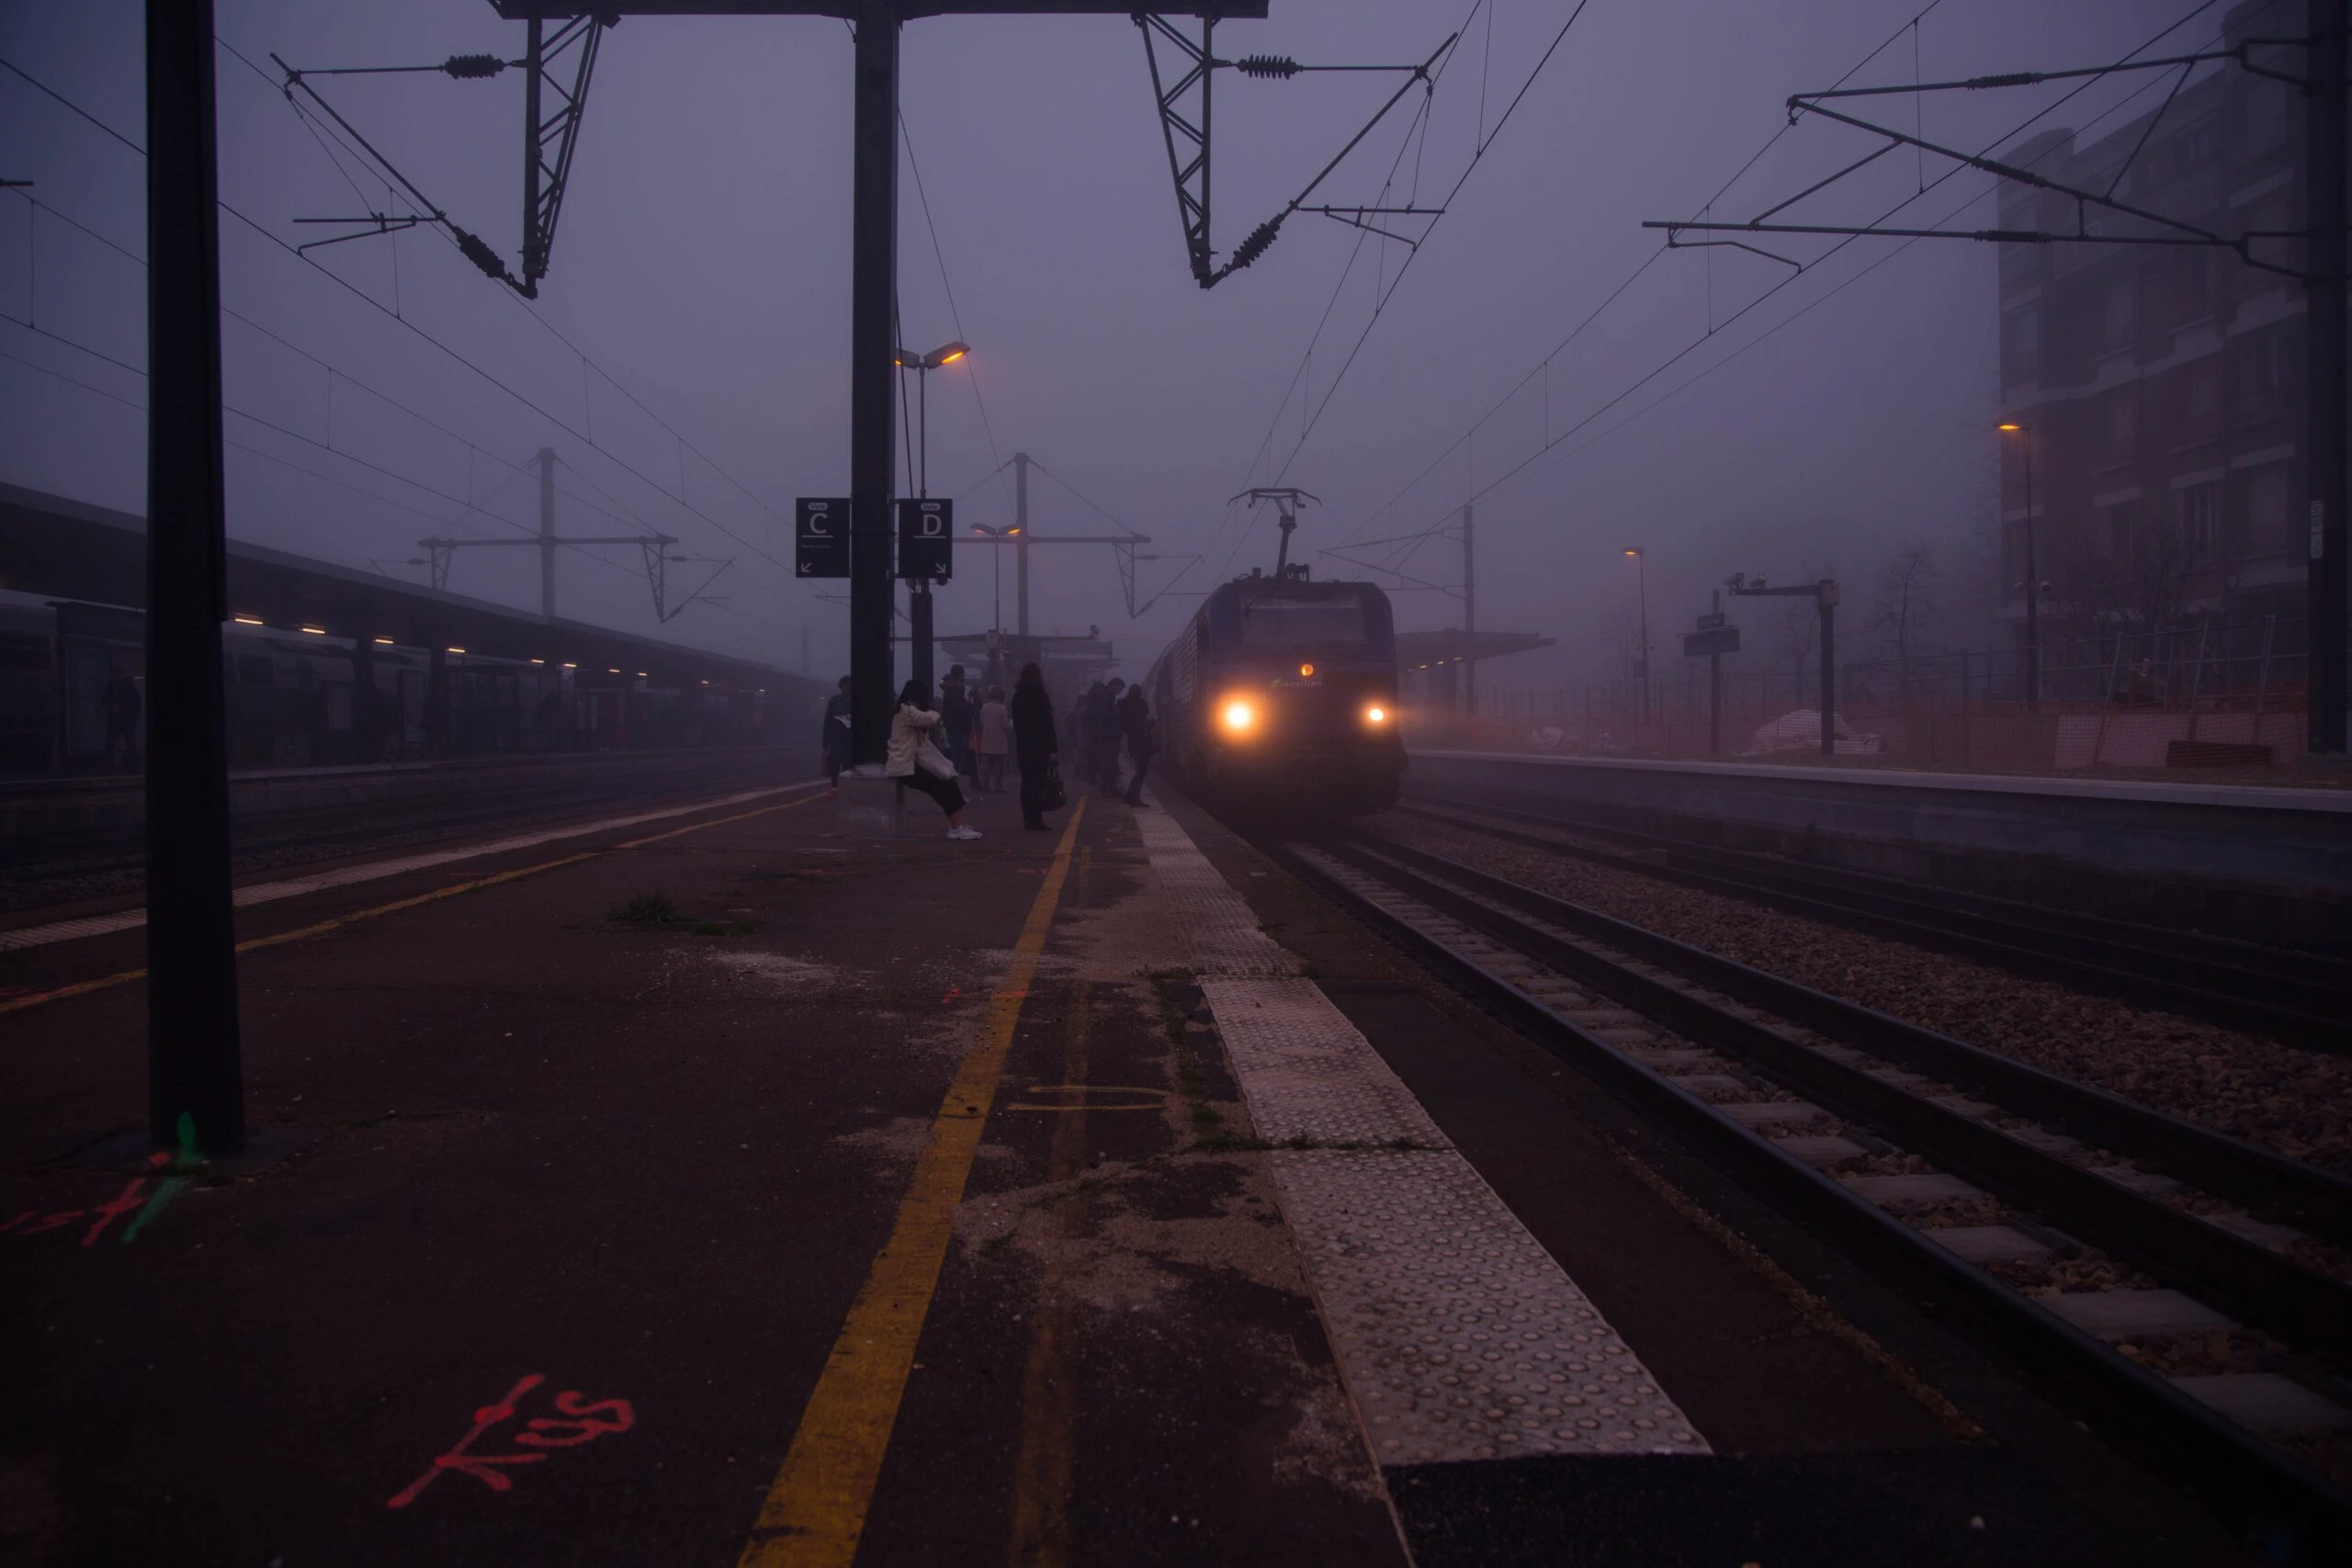 gilles-rolland-monnet-e_i-AfRKEHs-Night Train station at dusk-unsplash